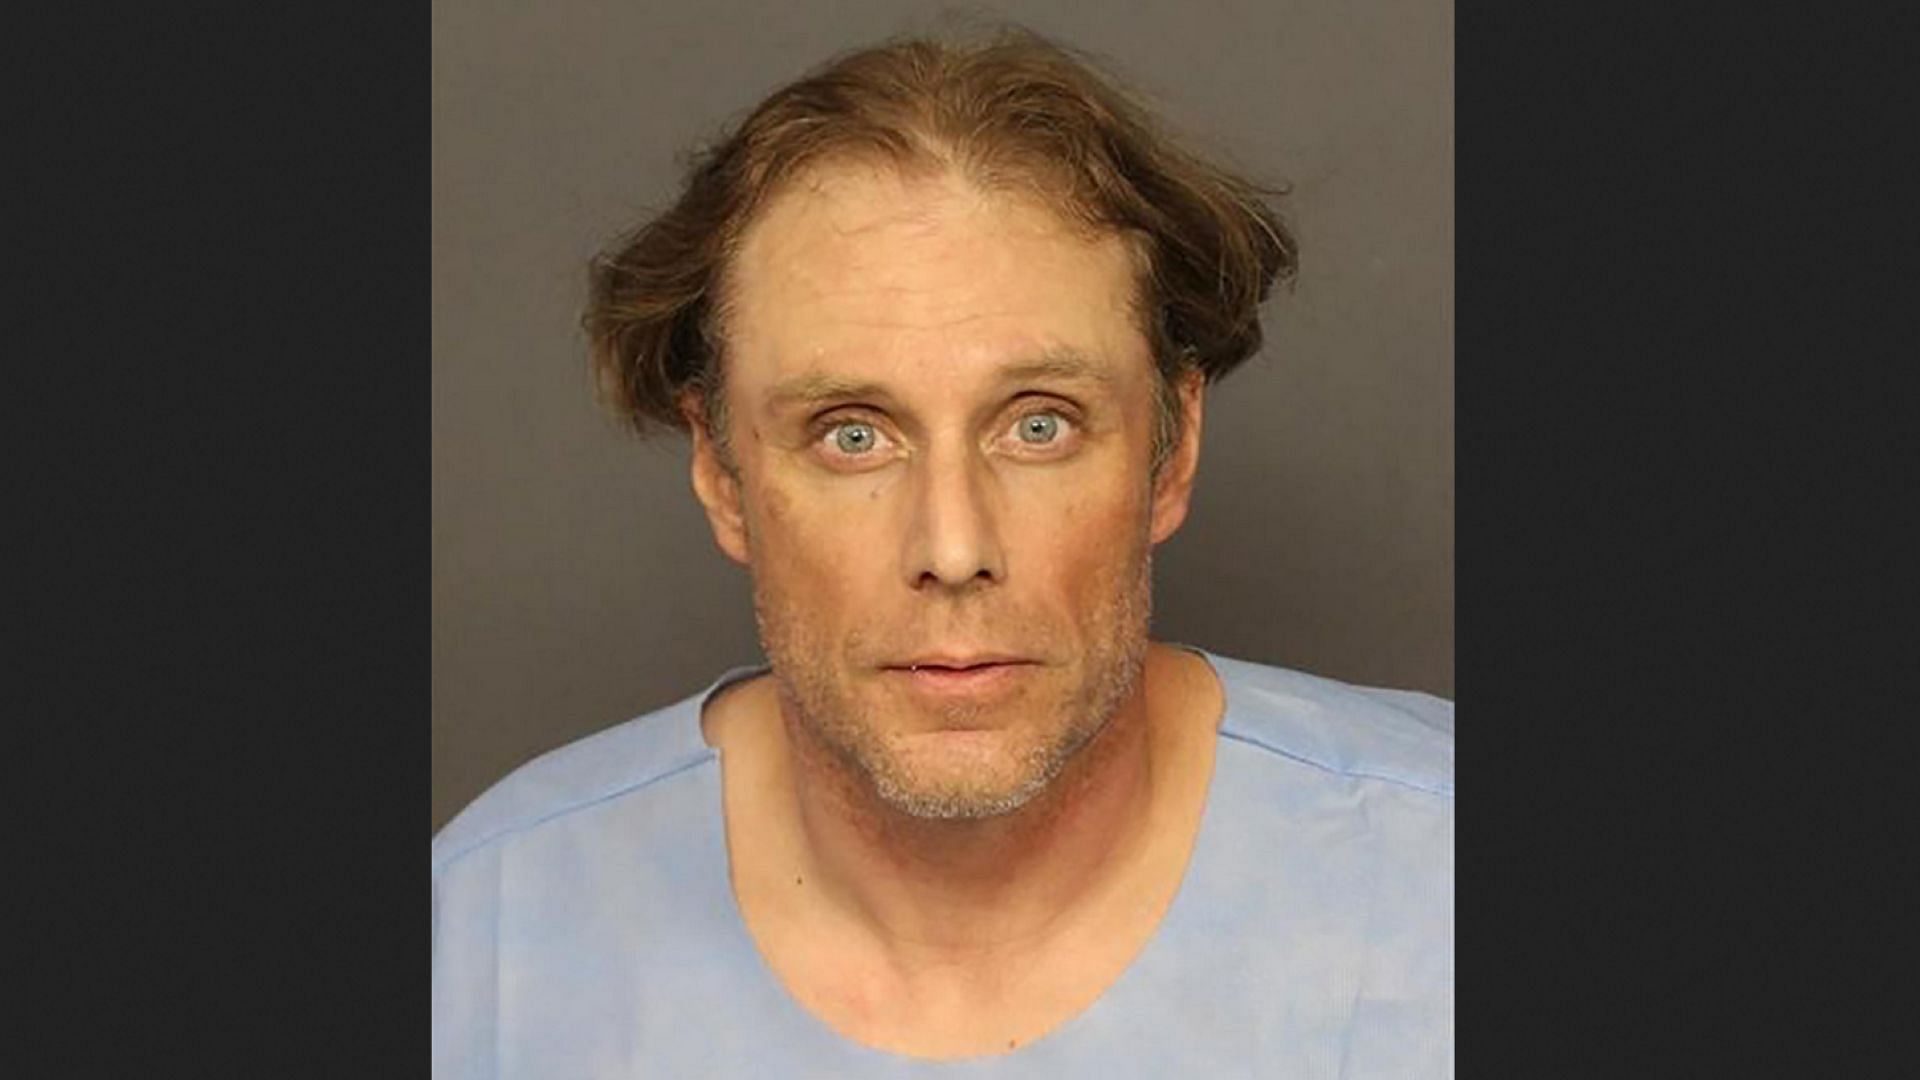 44-year-old Brandon Olsen was apprehended after he broke into the Colorado Supreme Court building in Denver. (Image via Denver Police Department)